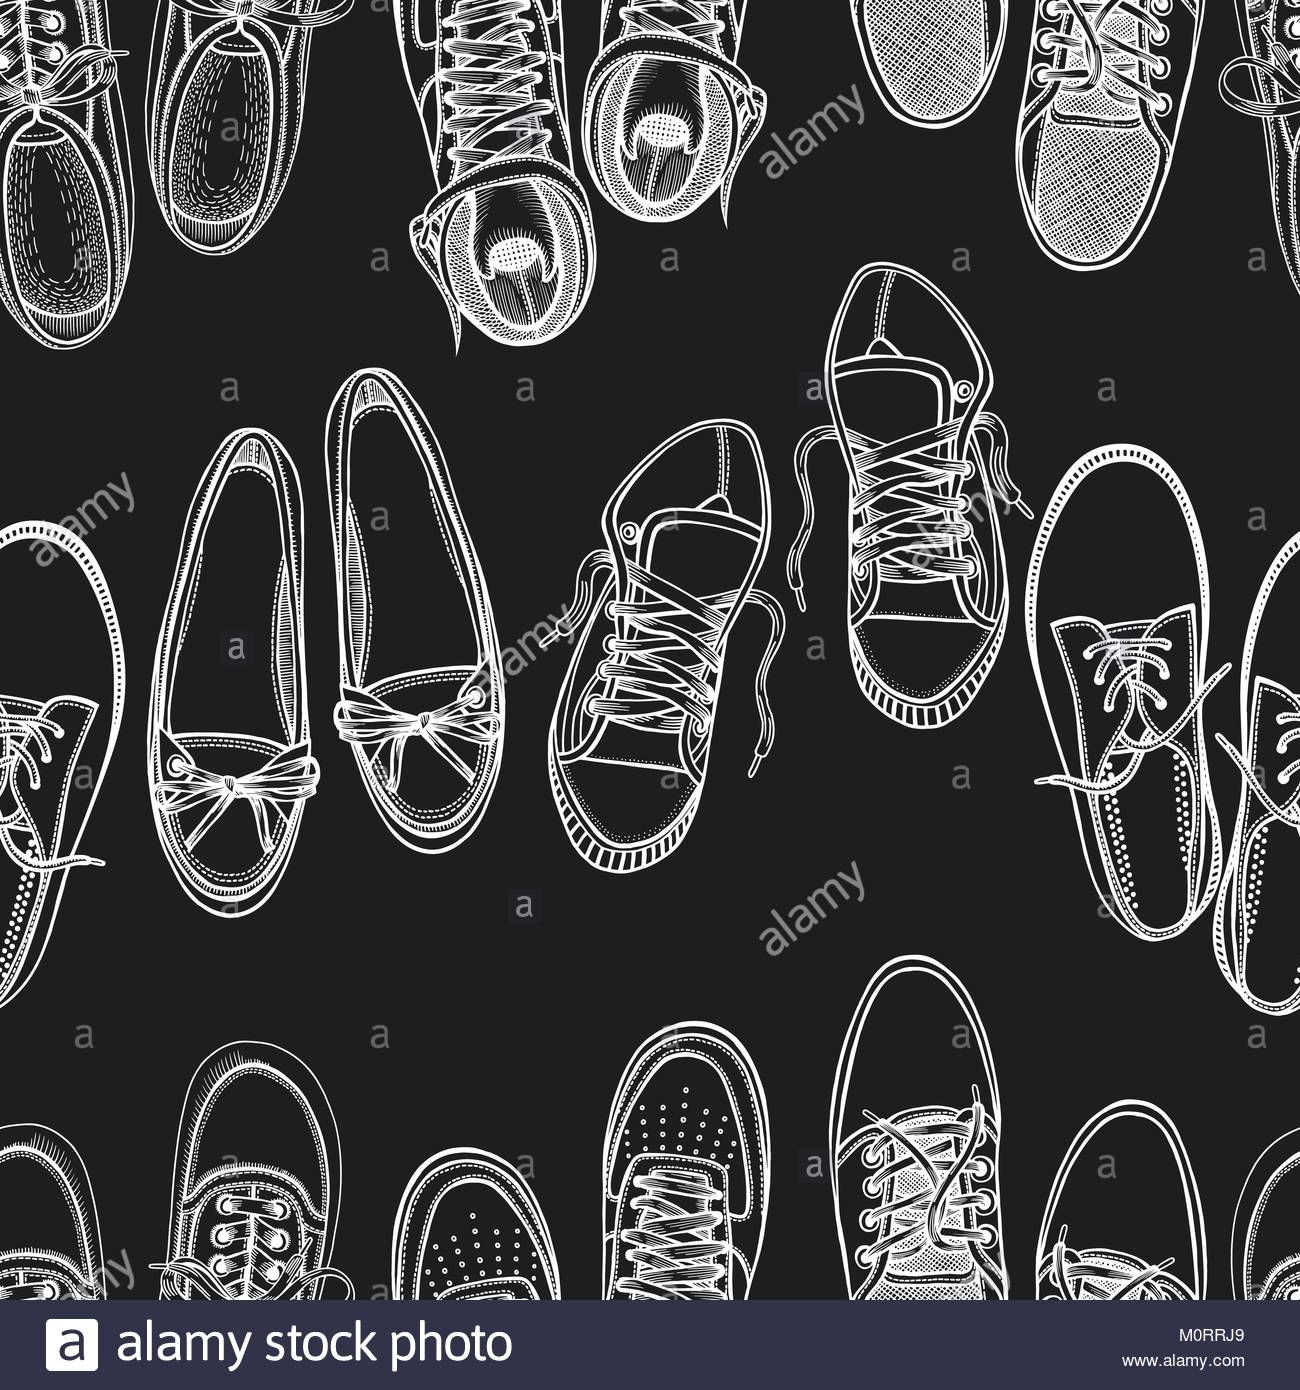 [51+] Sneakers Backgrounds | WallpaperSafari